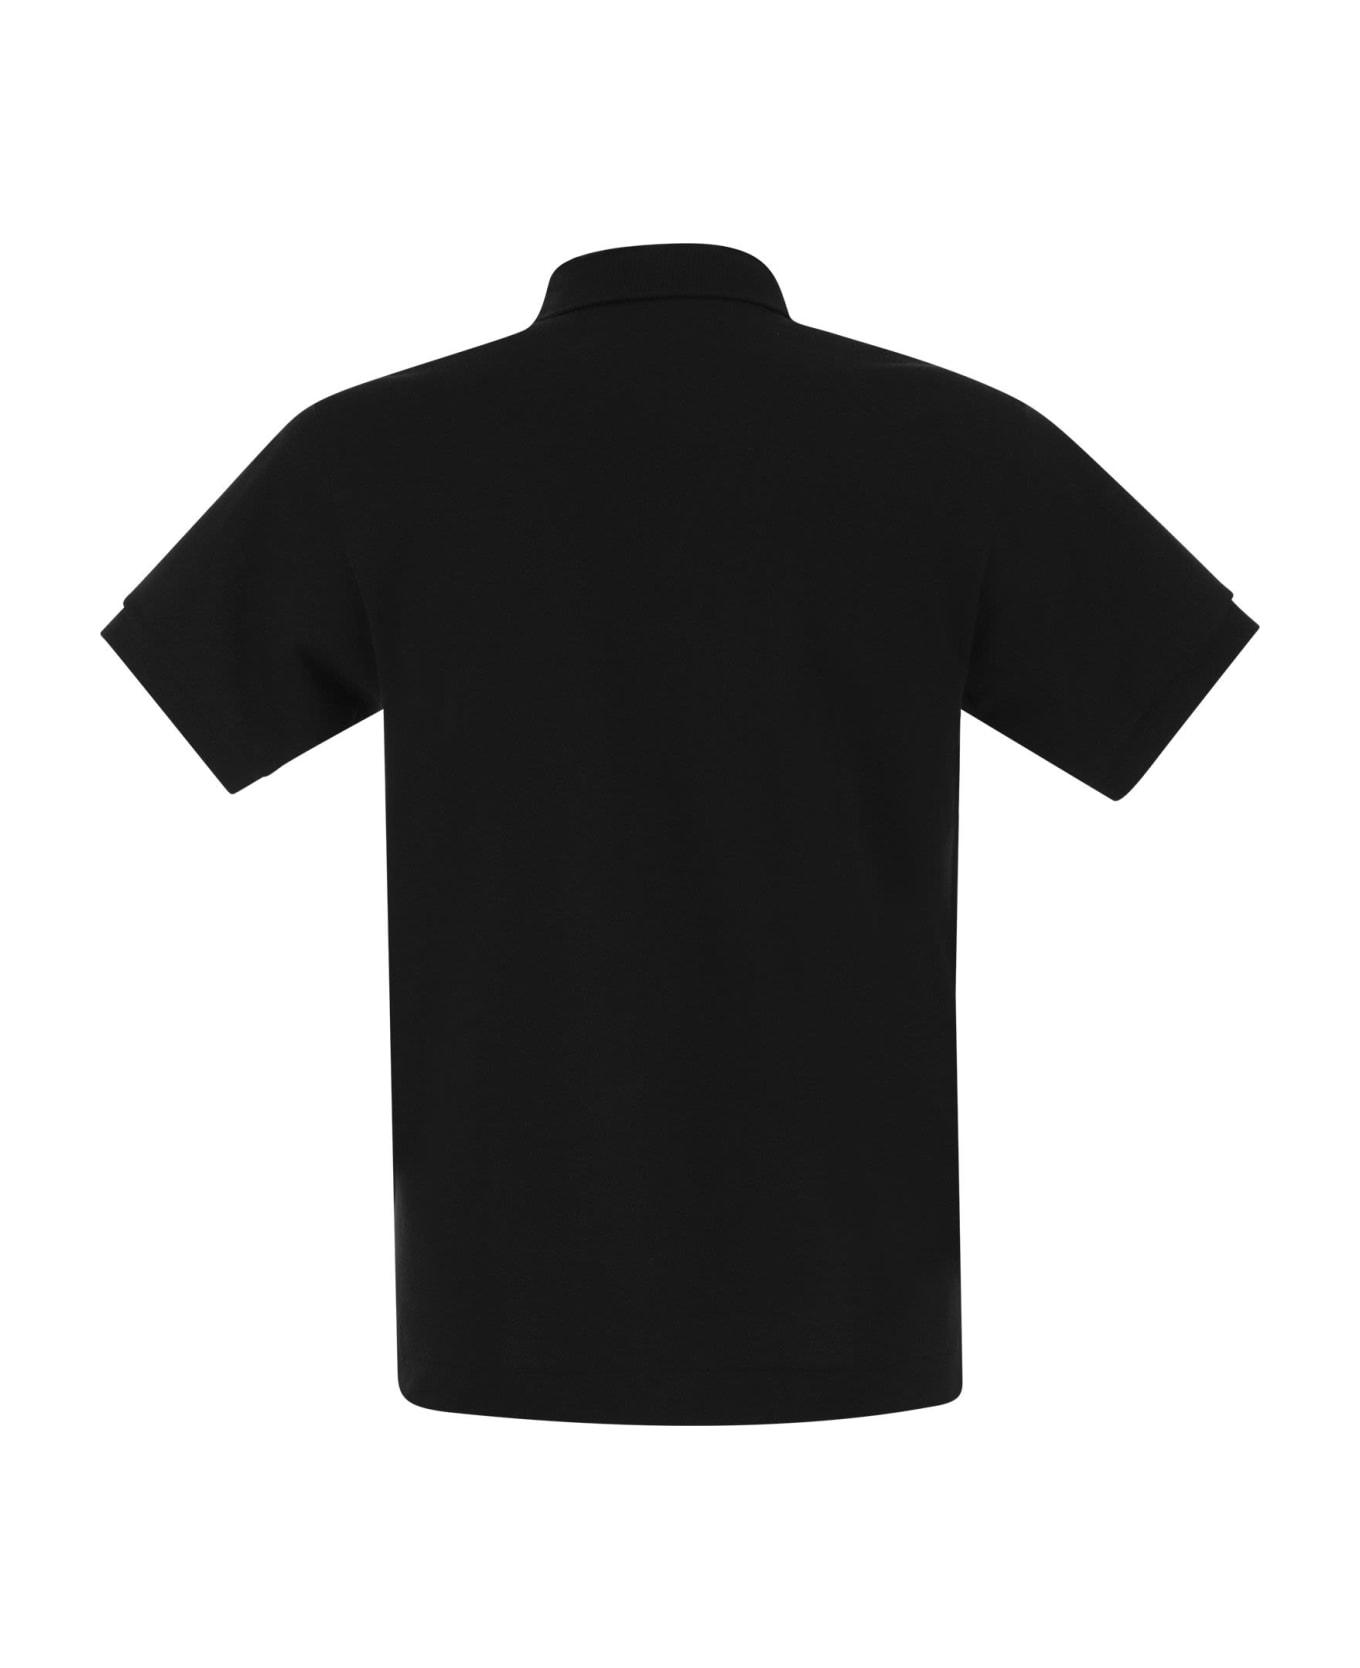 Lacoste Classic Fit Cotton Pique Polo Shirt - Black